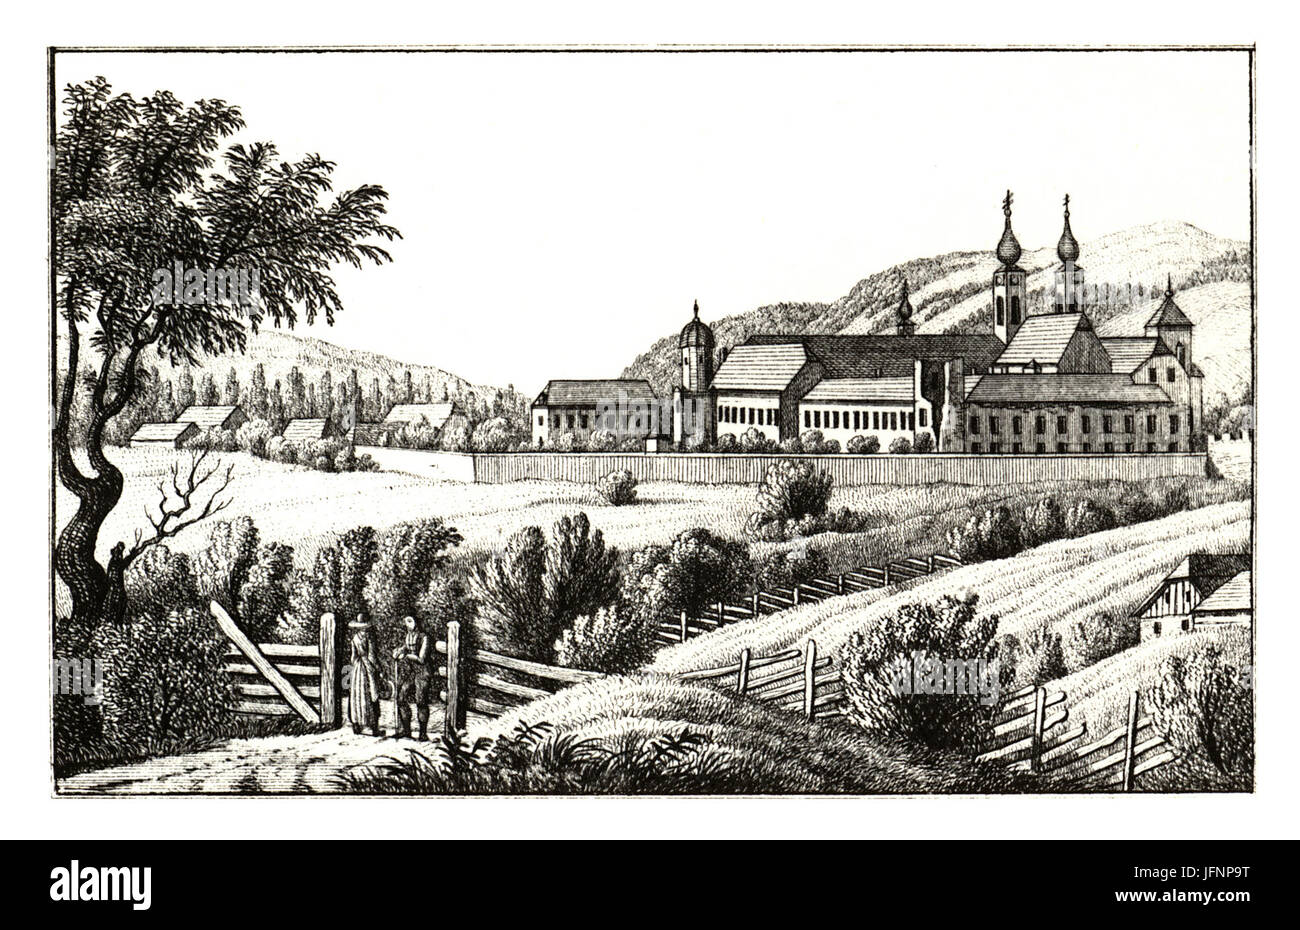 7 Stift Seckau, Vordernberg - gez. S. Kölbl - J.F.Kaiser Lithografirte Ansichten der Steiermark 1830 Stock Photo